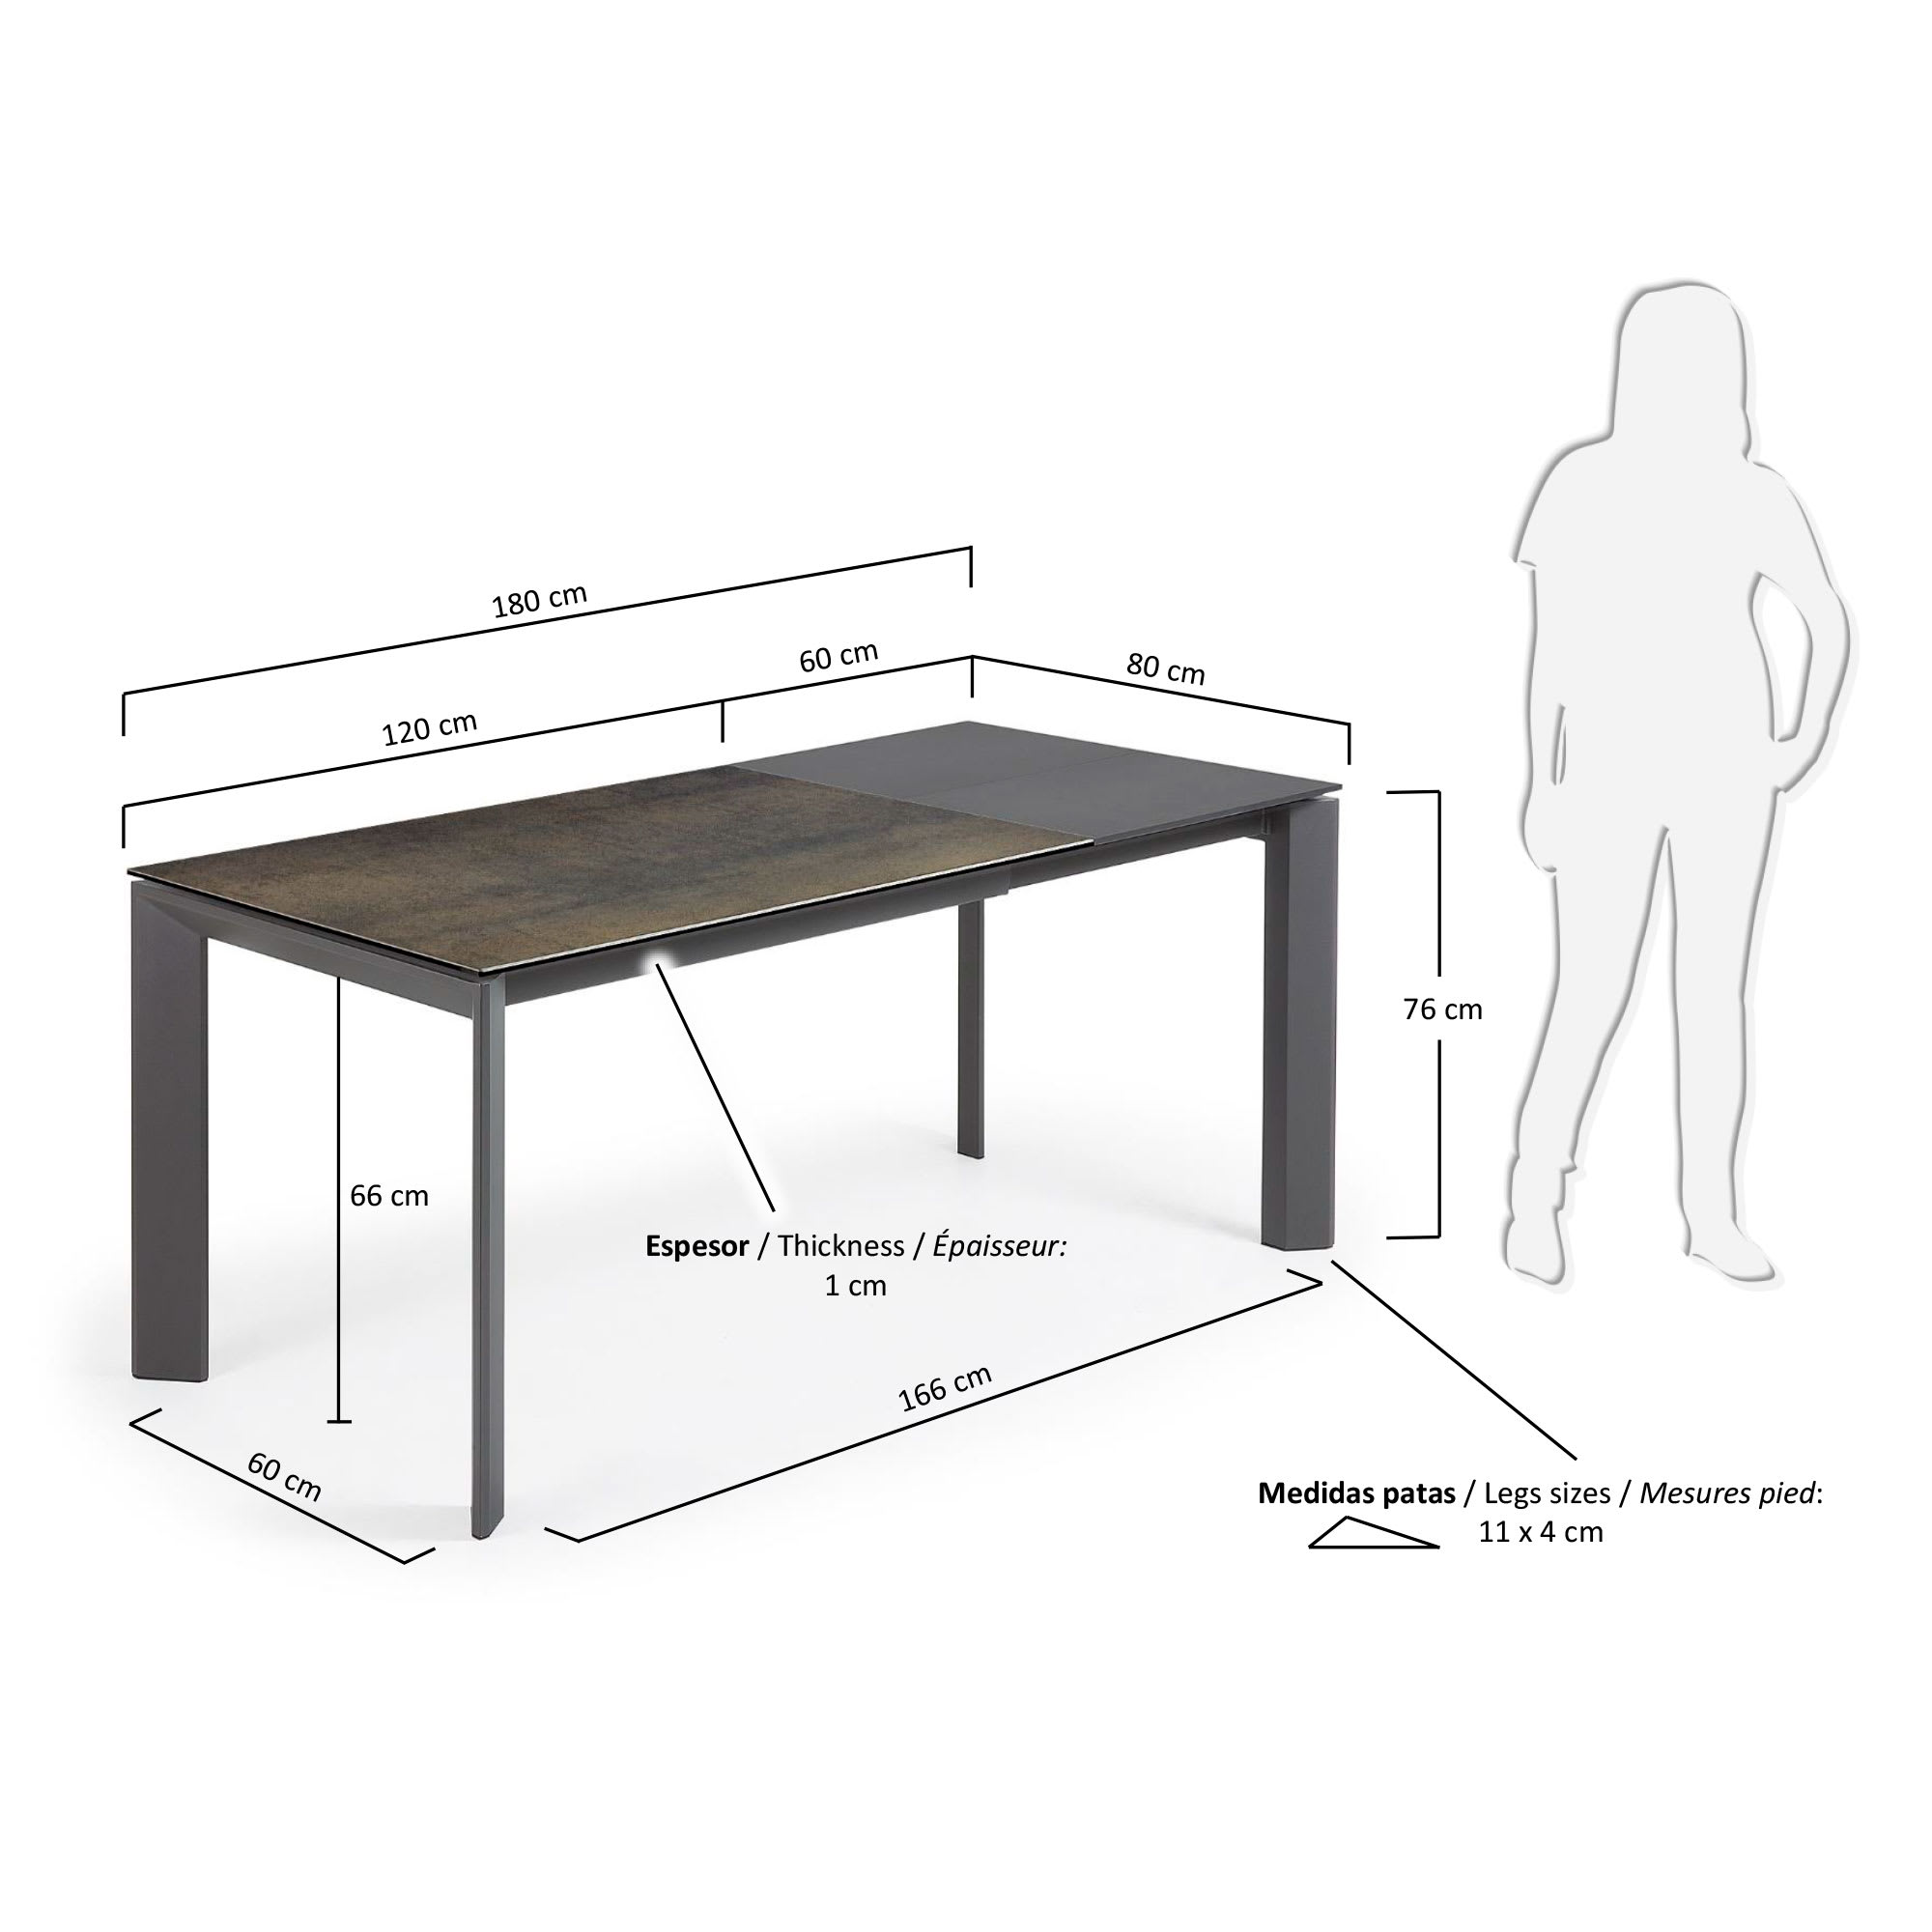 엑시스 세라믹 확장형 테이블 IM(80 x 120-180cm) - 크기